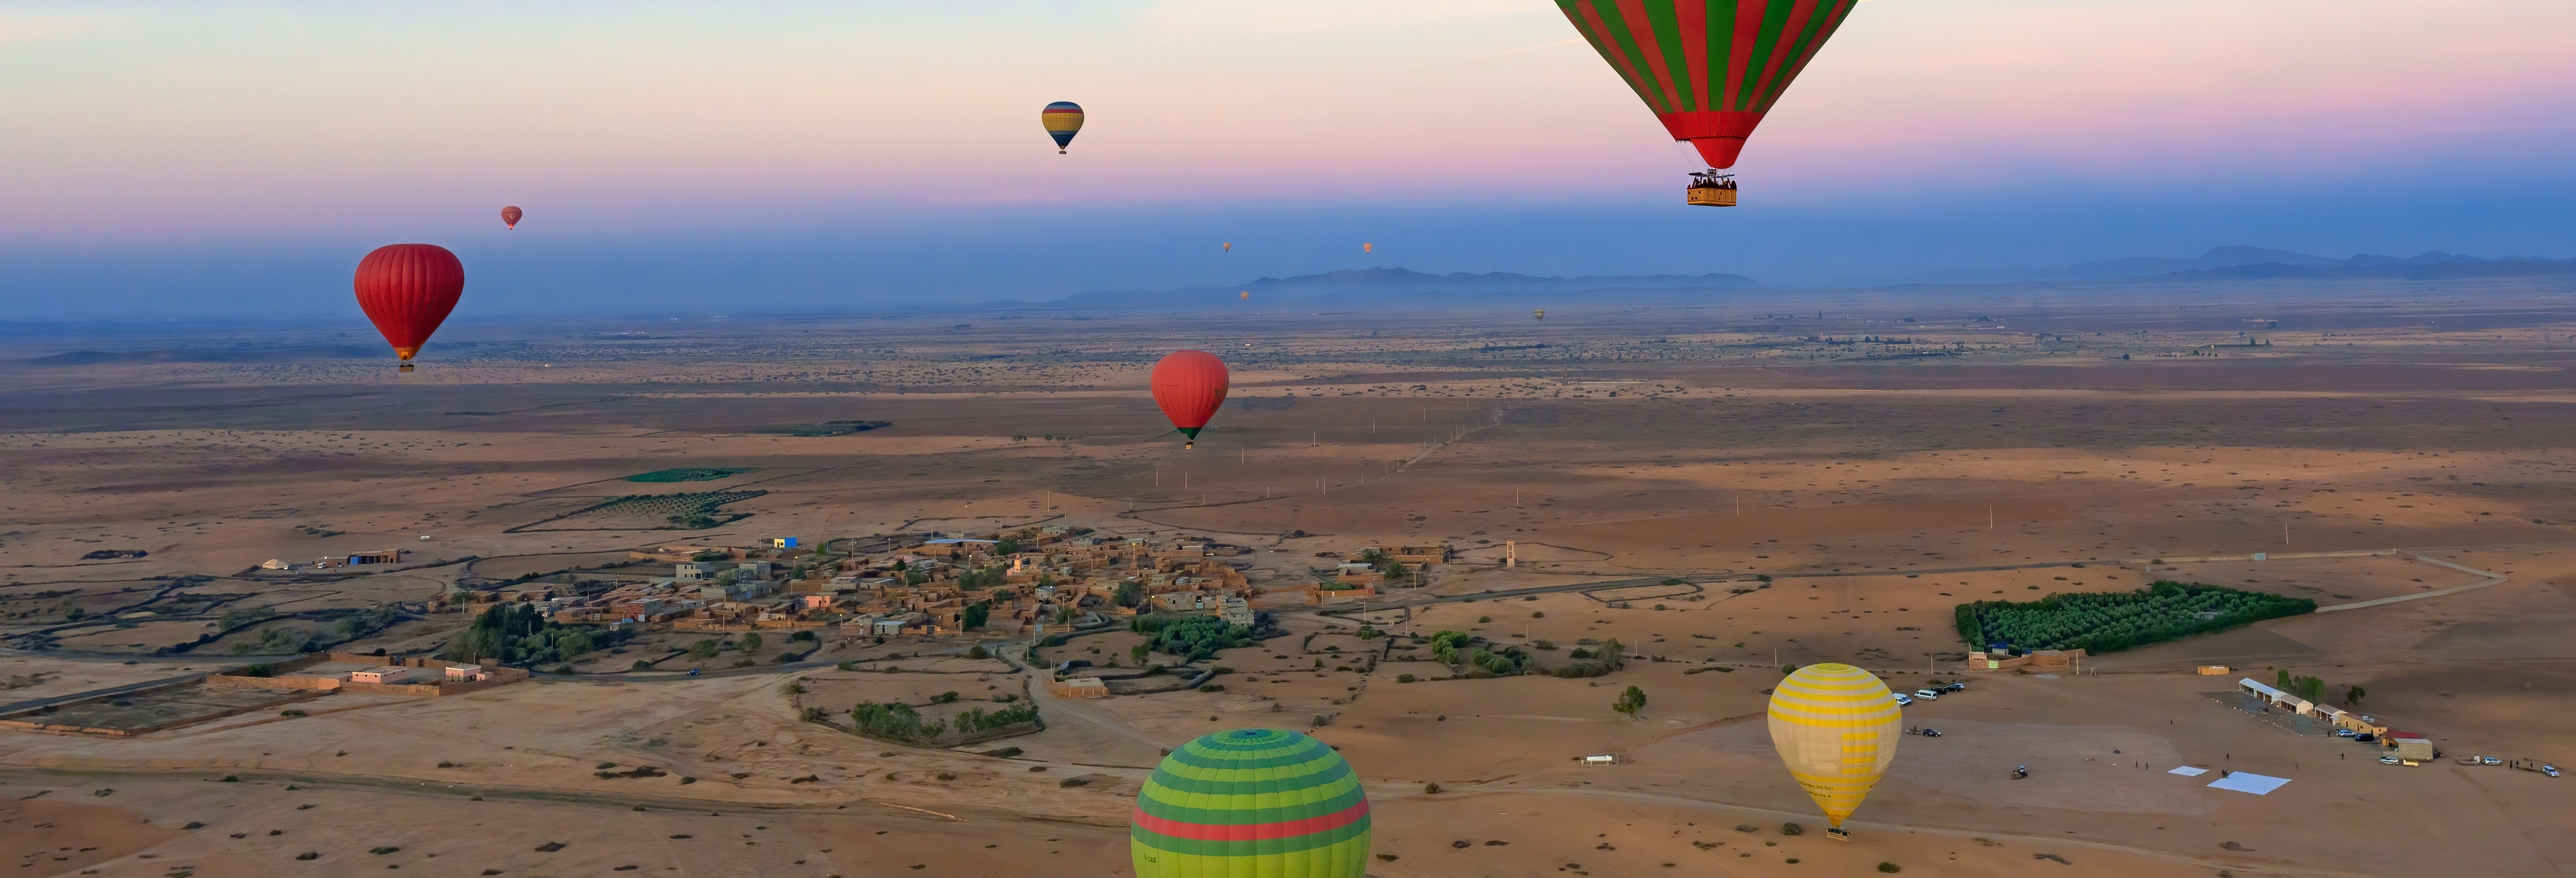 Passeio de balão pelo norte de Marrakech